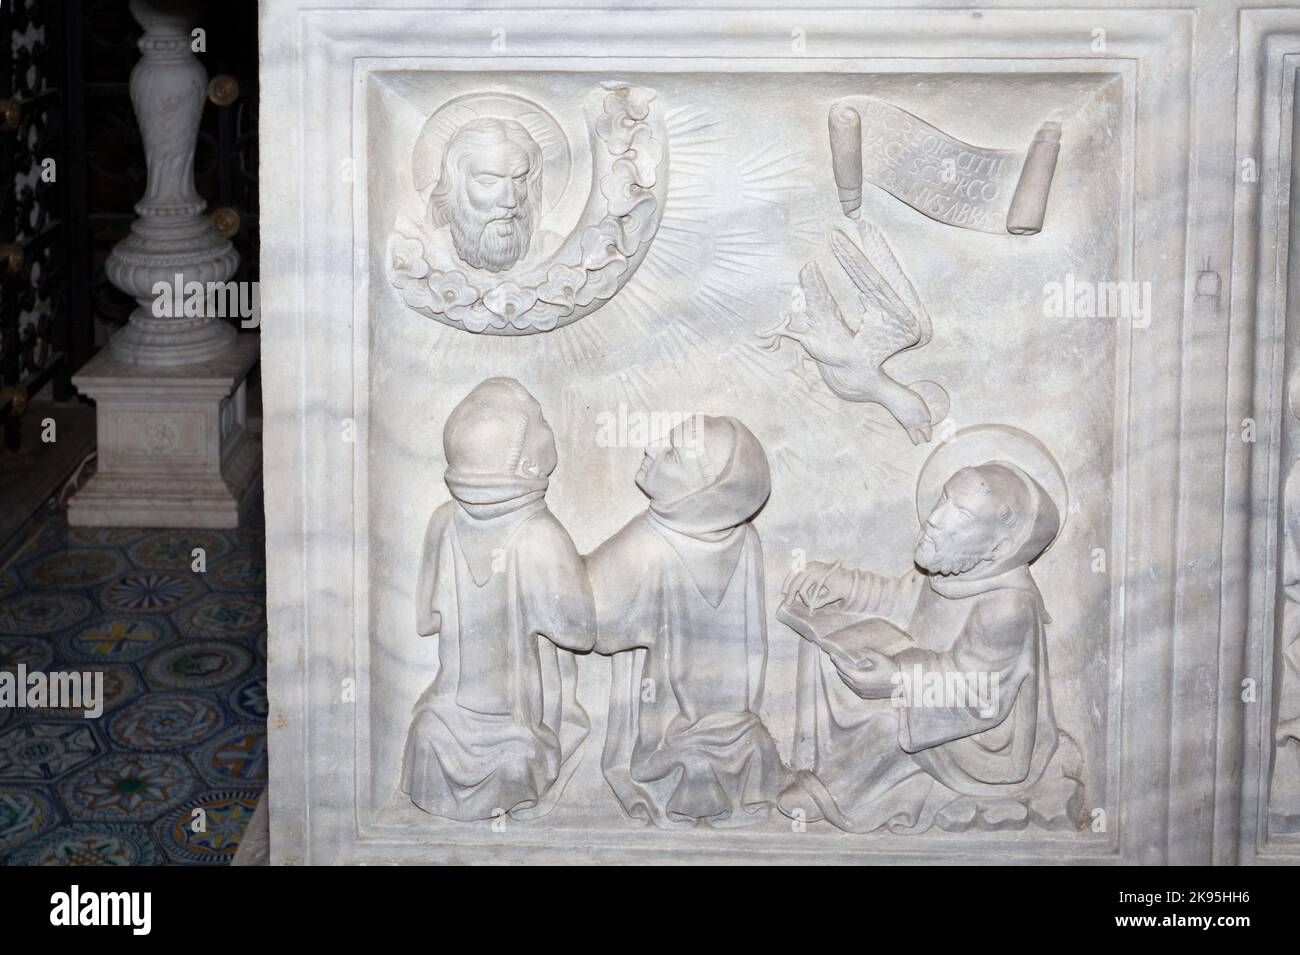 Saint-Columbanus écrivant la règle monastique inspirée par Dieu - sarcophage de Saint-Columbanus (par Giovanni dei Patriarchi, 1480) - crypte de l'abbaye de Bobbio Banque D'Images